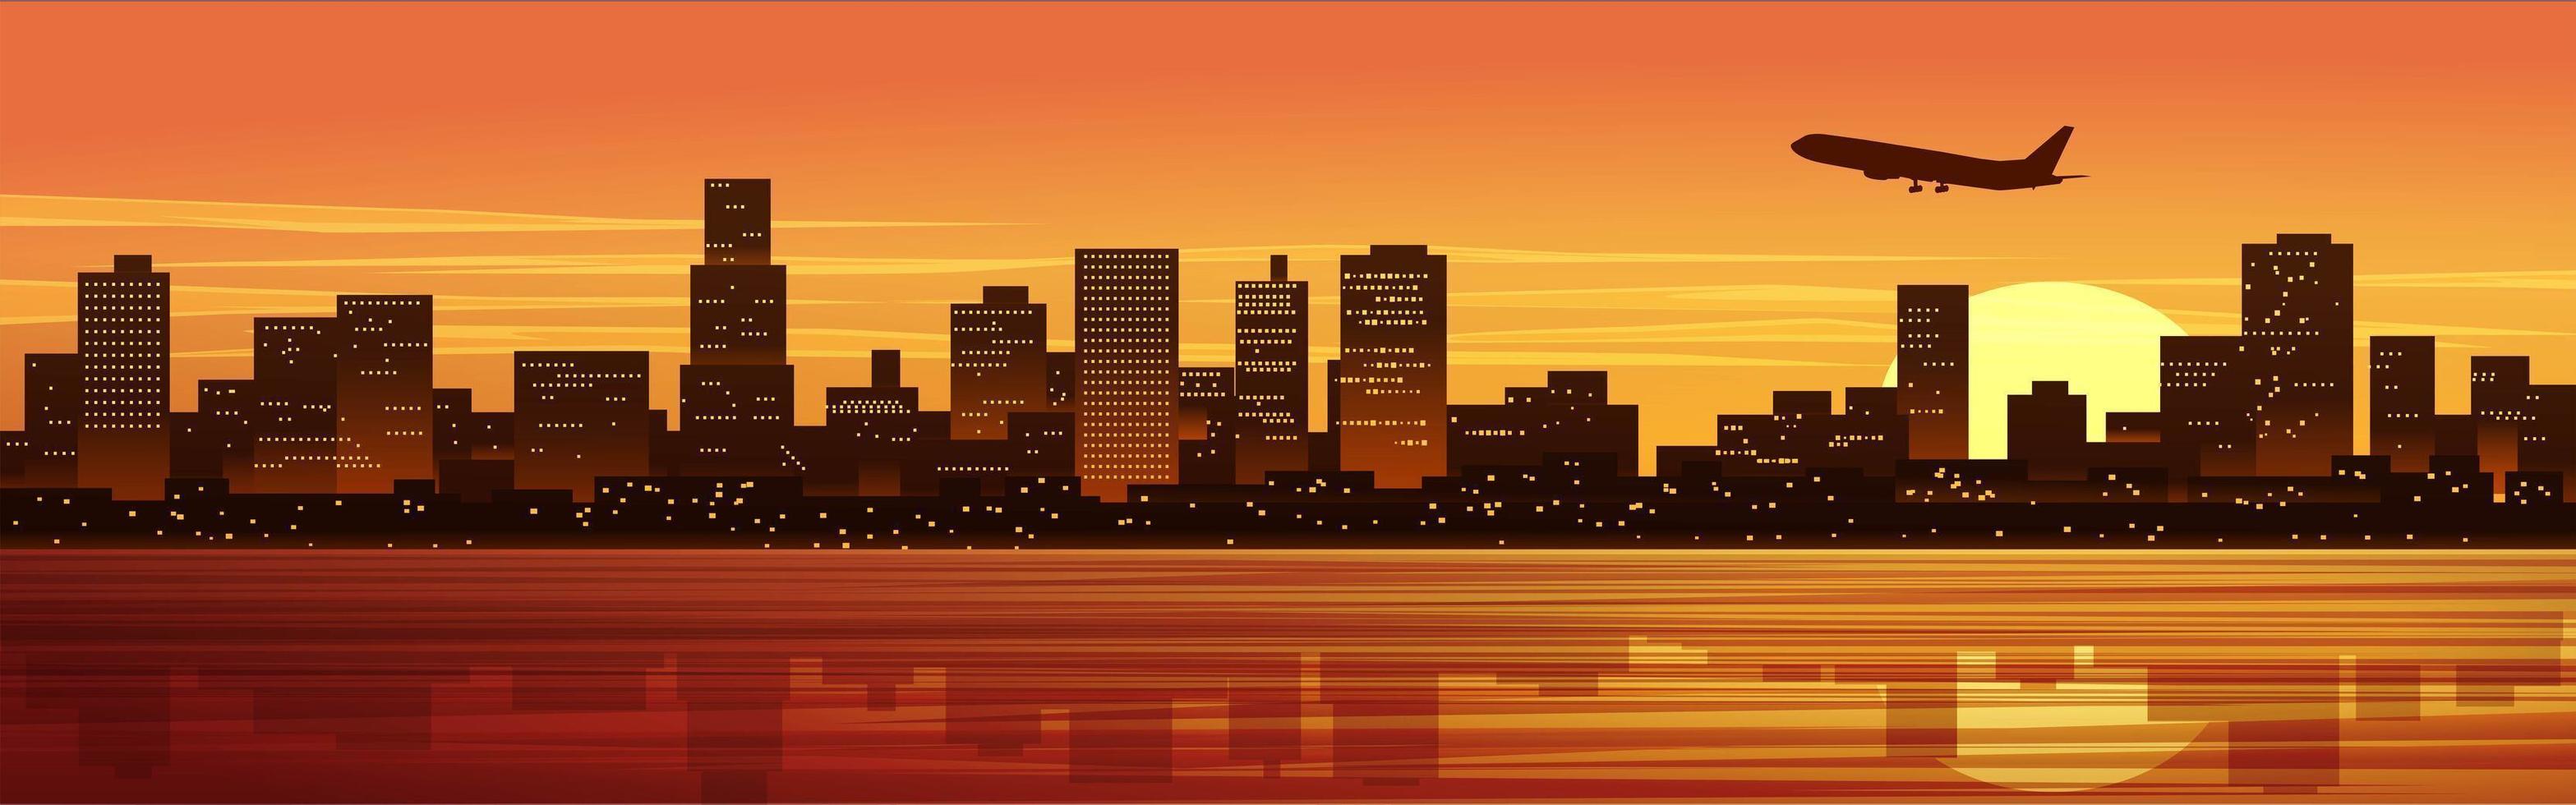 illustration de la ville au coucher du soleil vecteur